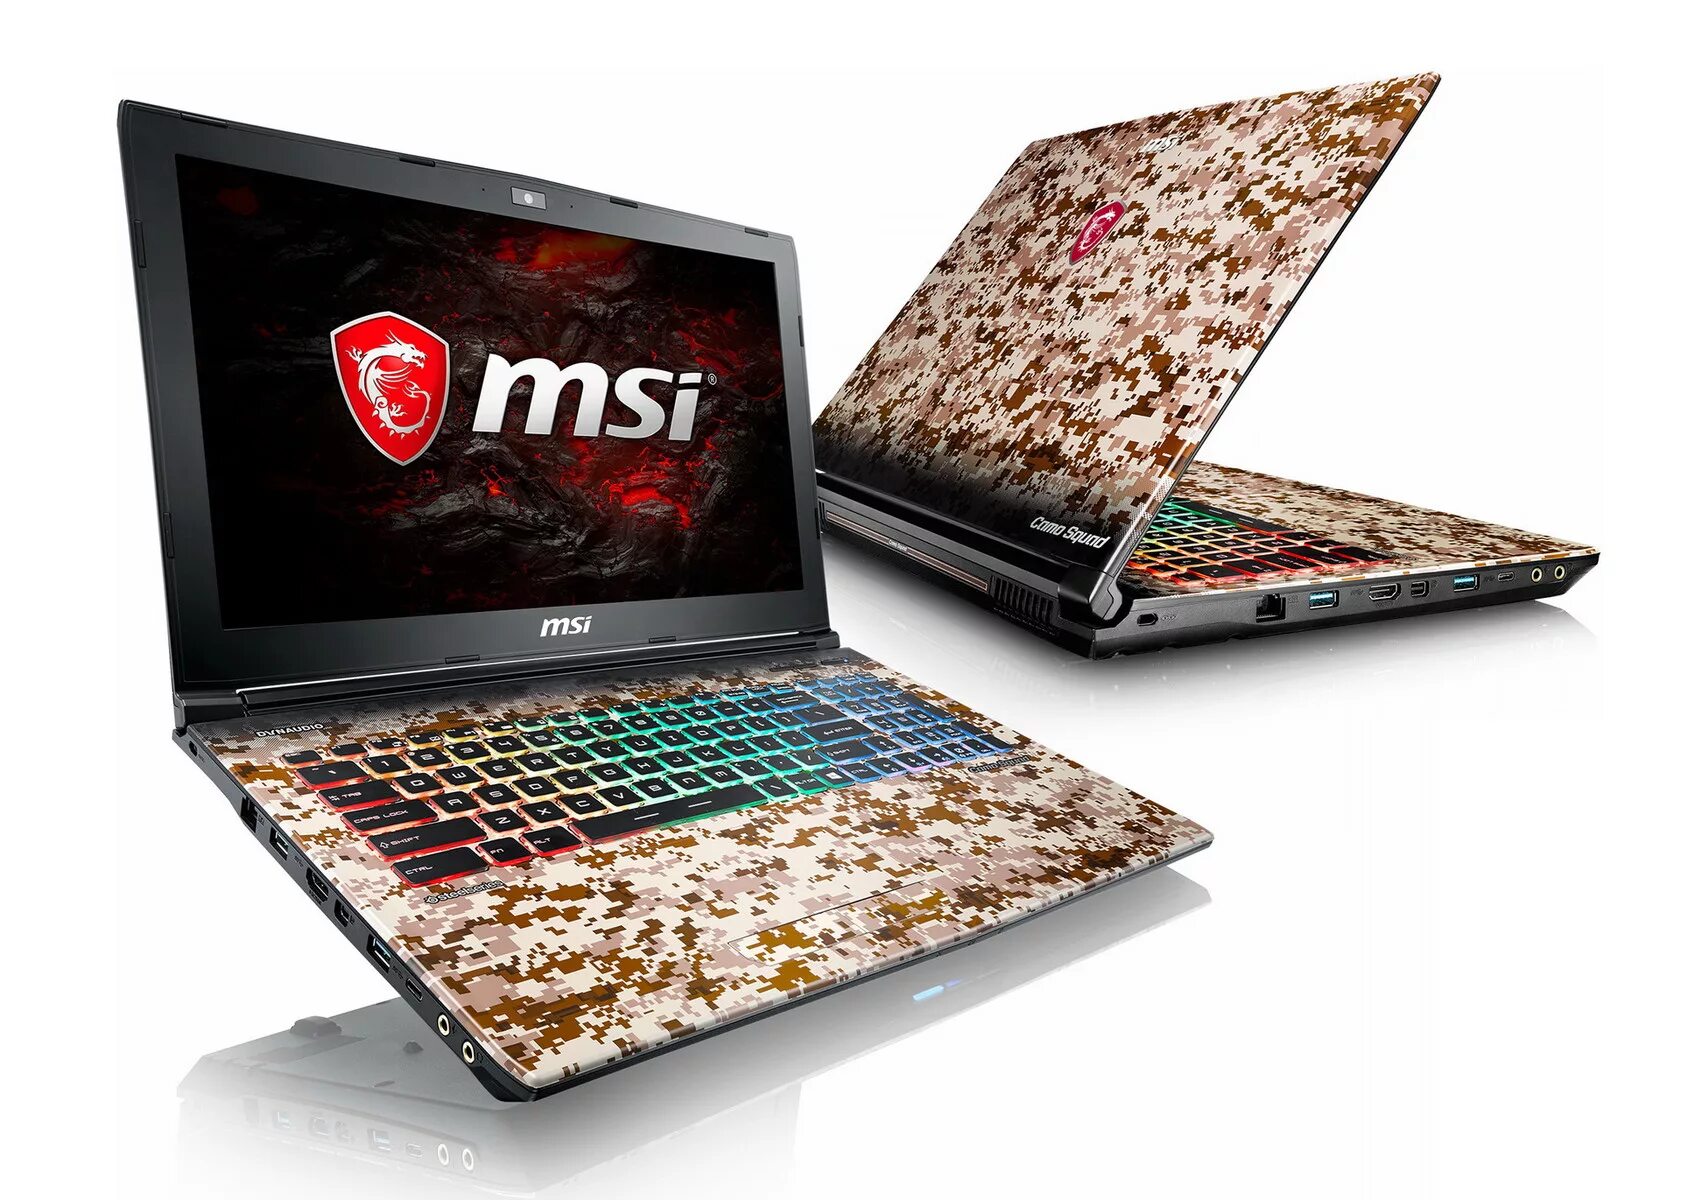 Ноутбук MSI ge62. Игровой ноутбук MSI 1050ti. MSI ge62 7re Camo Squad. Игровой ноутбук MSI 1050ti серебристый. Ноутбук для игры в танки